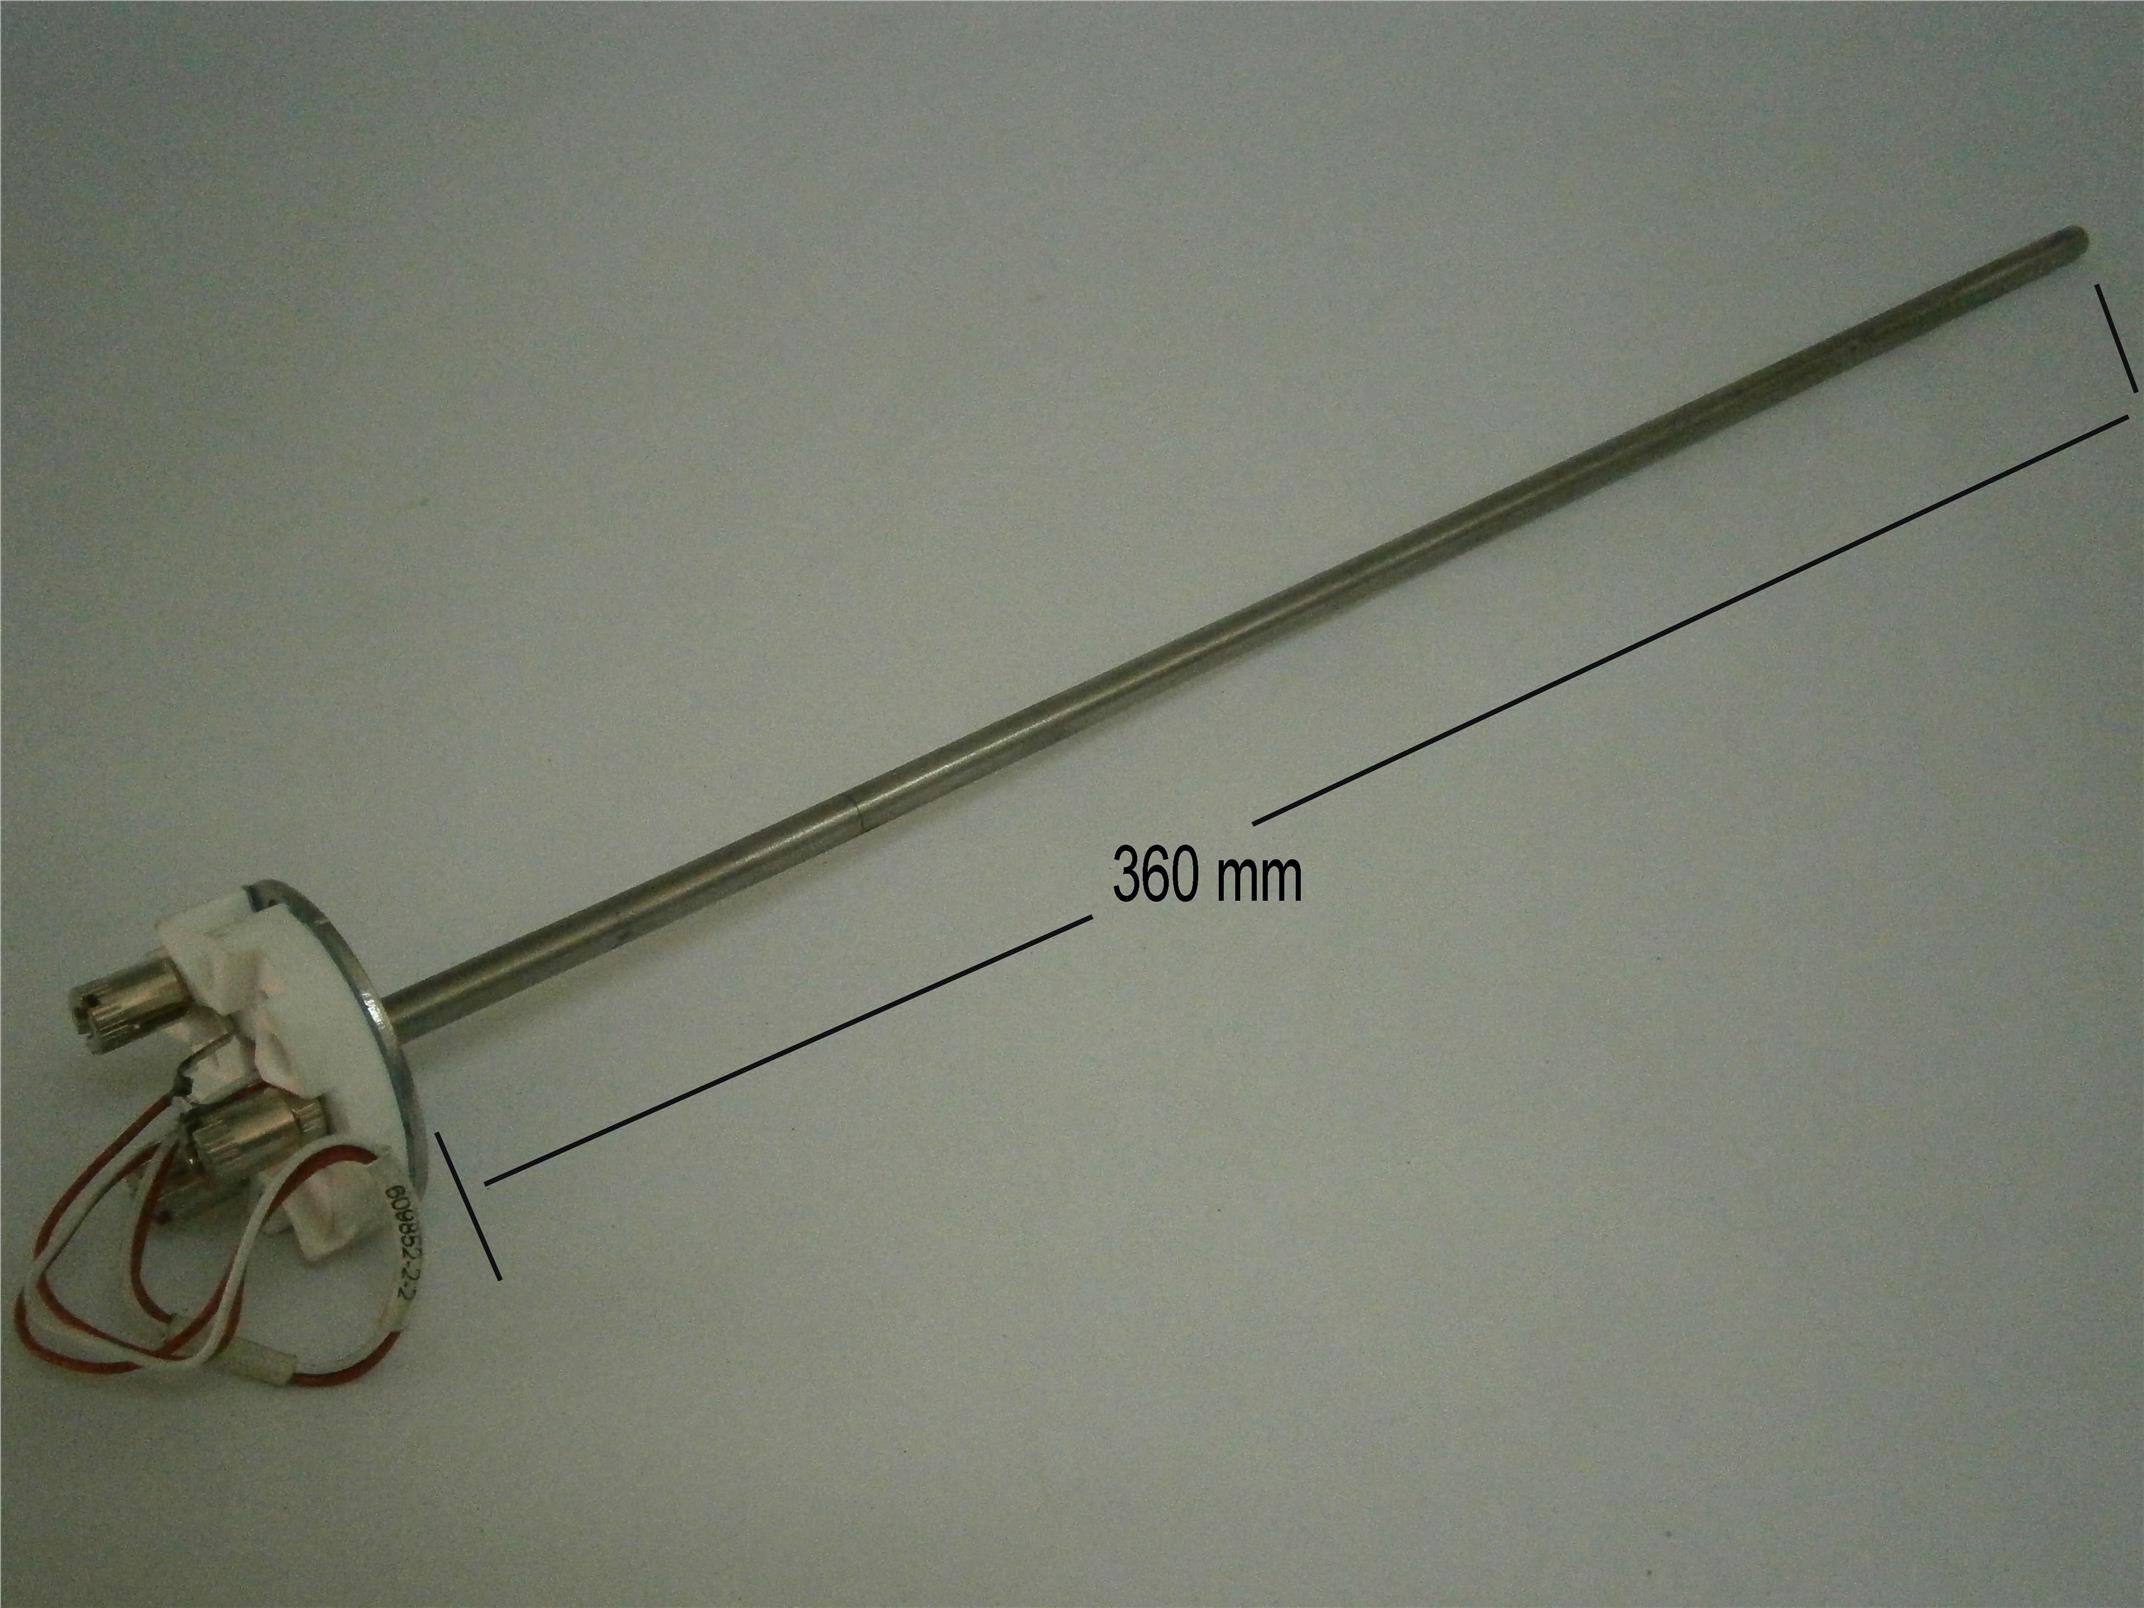 Temperature sensor, Pt100, 360 mm